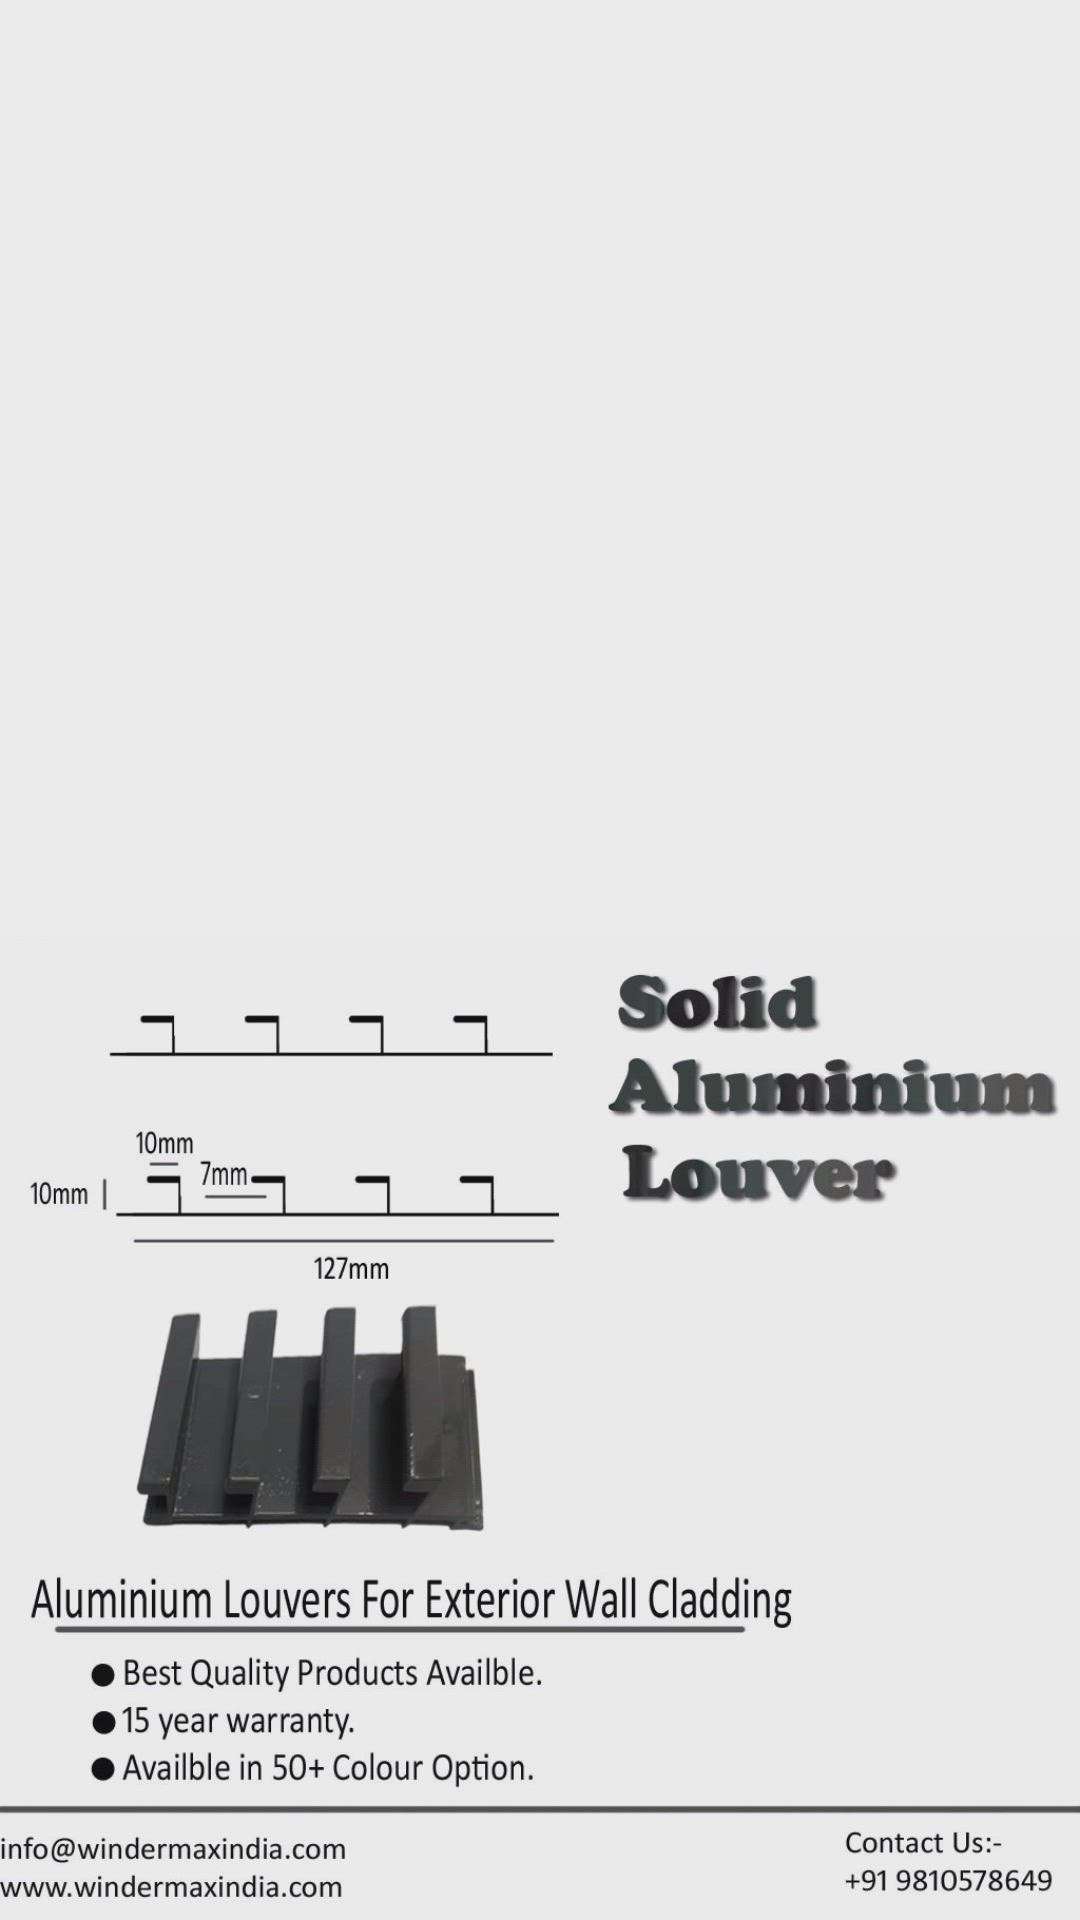 aluminium Louvers  #AluminiumWindows  #aluminium  #Aluminiumcompositepanel  #aluminiumalloyrailing  #aluminumgate  #aluminiumlouvers